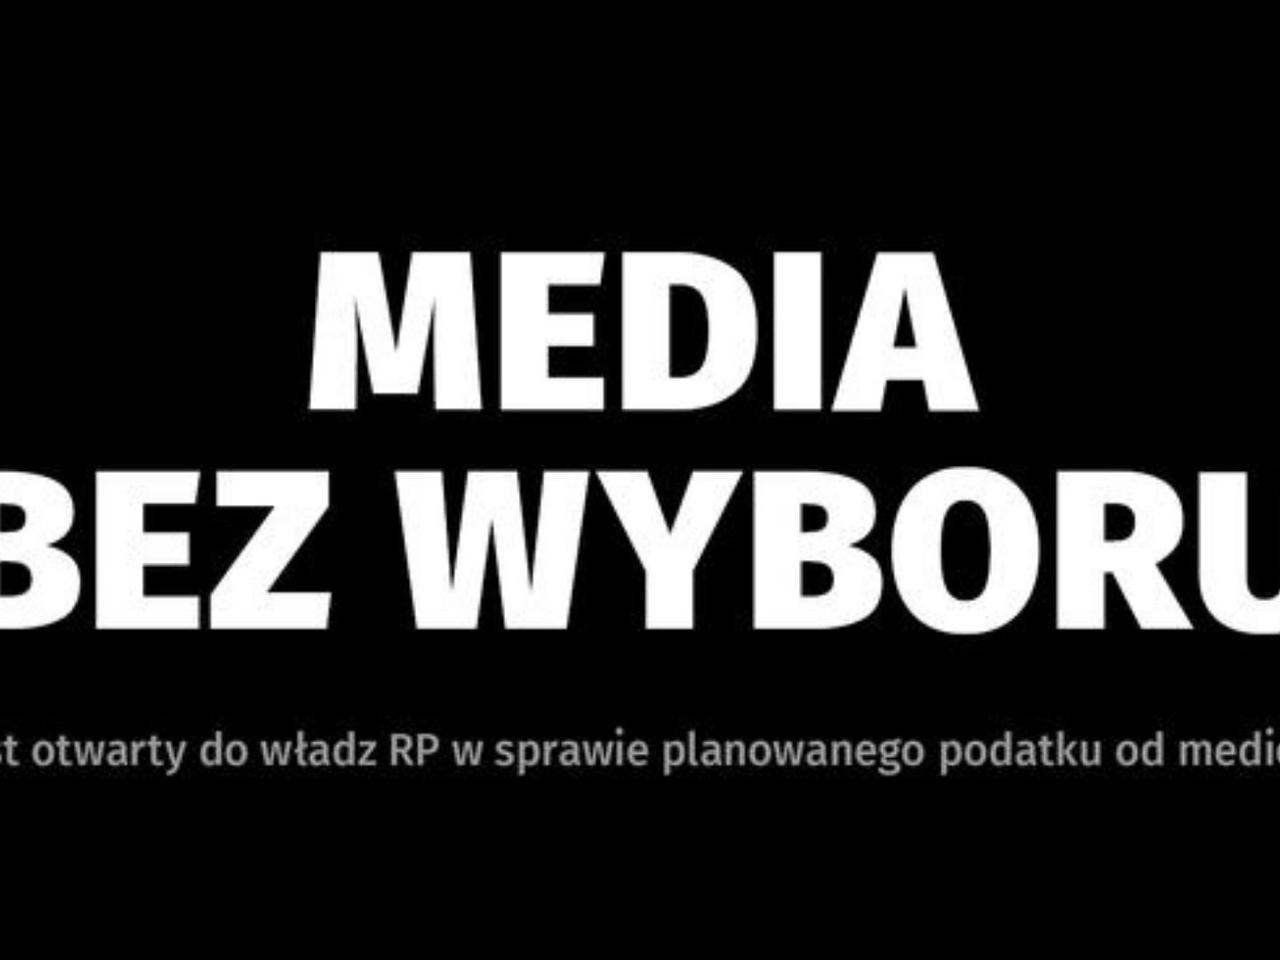 MEDIA BEZ WYBORU. List otwarty do władz Rzeczypospolitej Polskiej i liderów ugrupowań politycznych